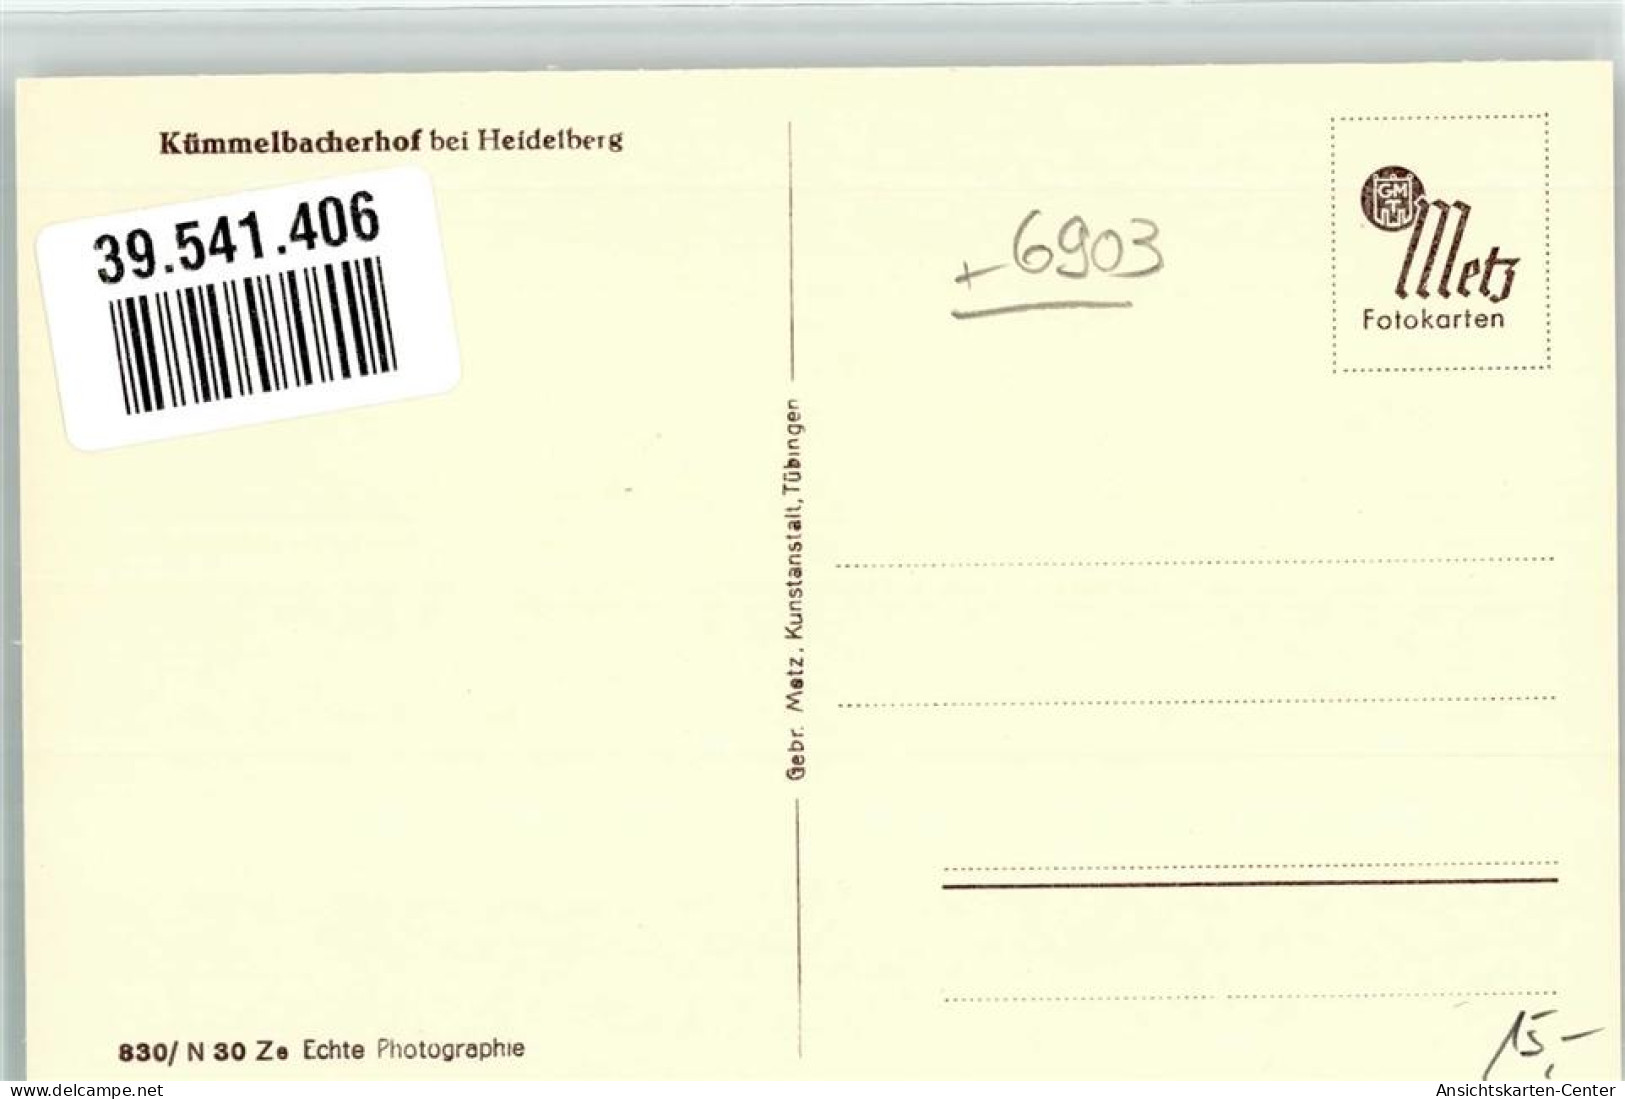 39541406 - Neckargemuend - Neckargemünd